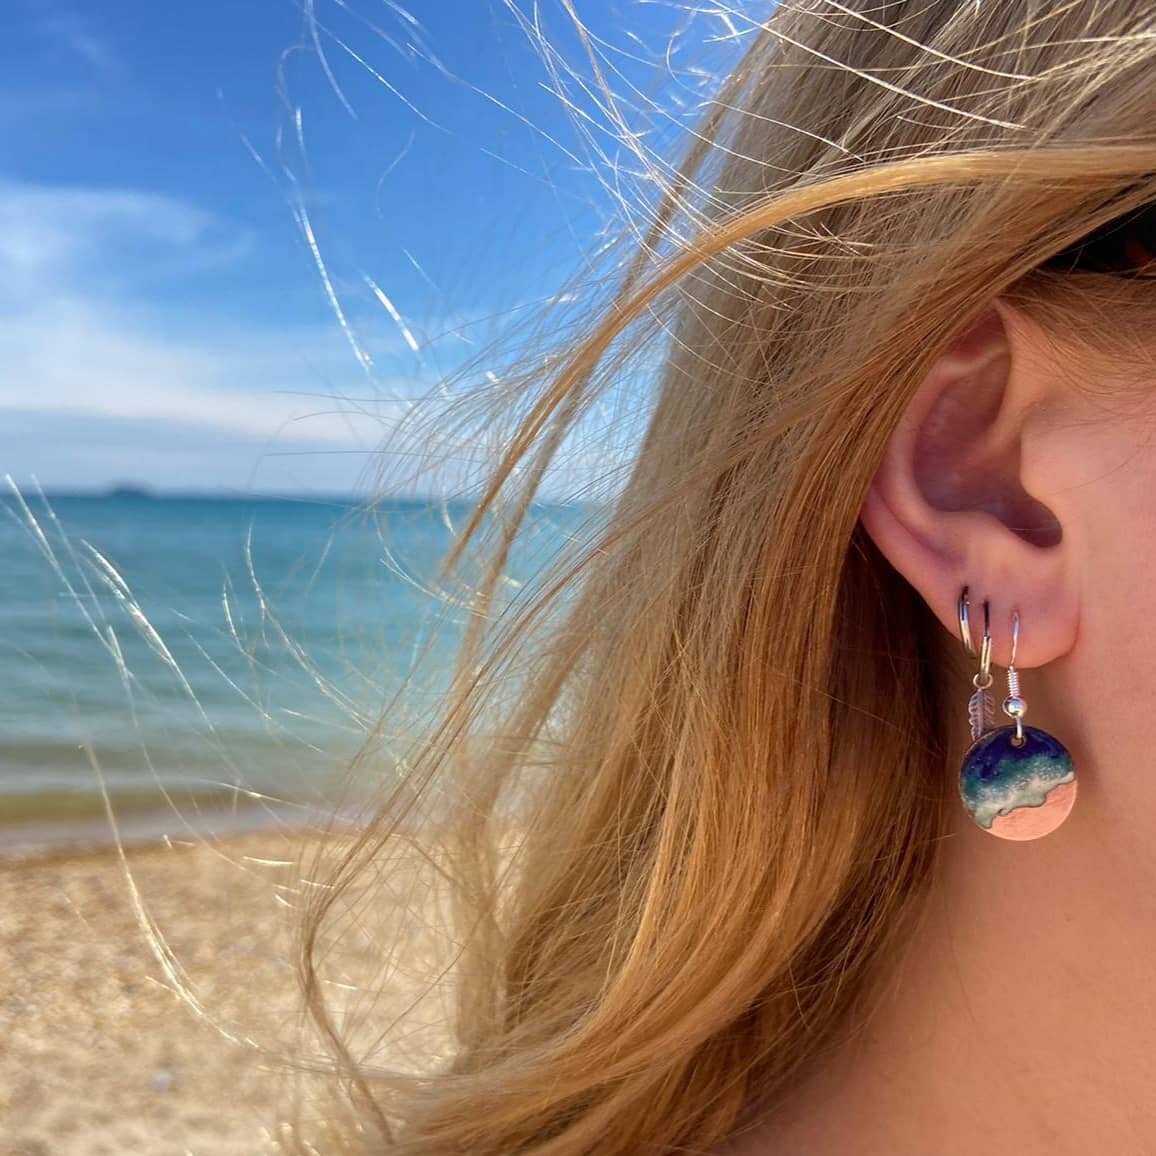 Handmade enamel seascape earrings modelled by the lovely Sadie, by the lovely sea, in the lovely sunshine. Available in my online store at www.kathwilliamsart.com 

#enamel #enamelartist #handmade #handmadejewellery #handmadeearrings #kilnfired #arti